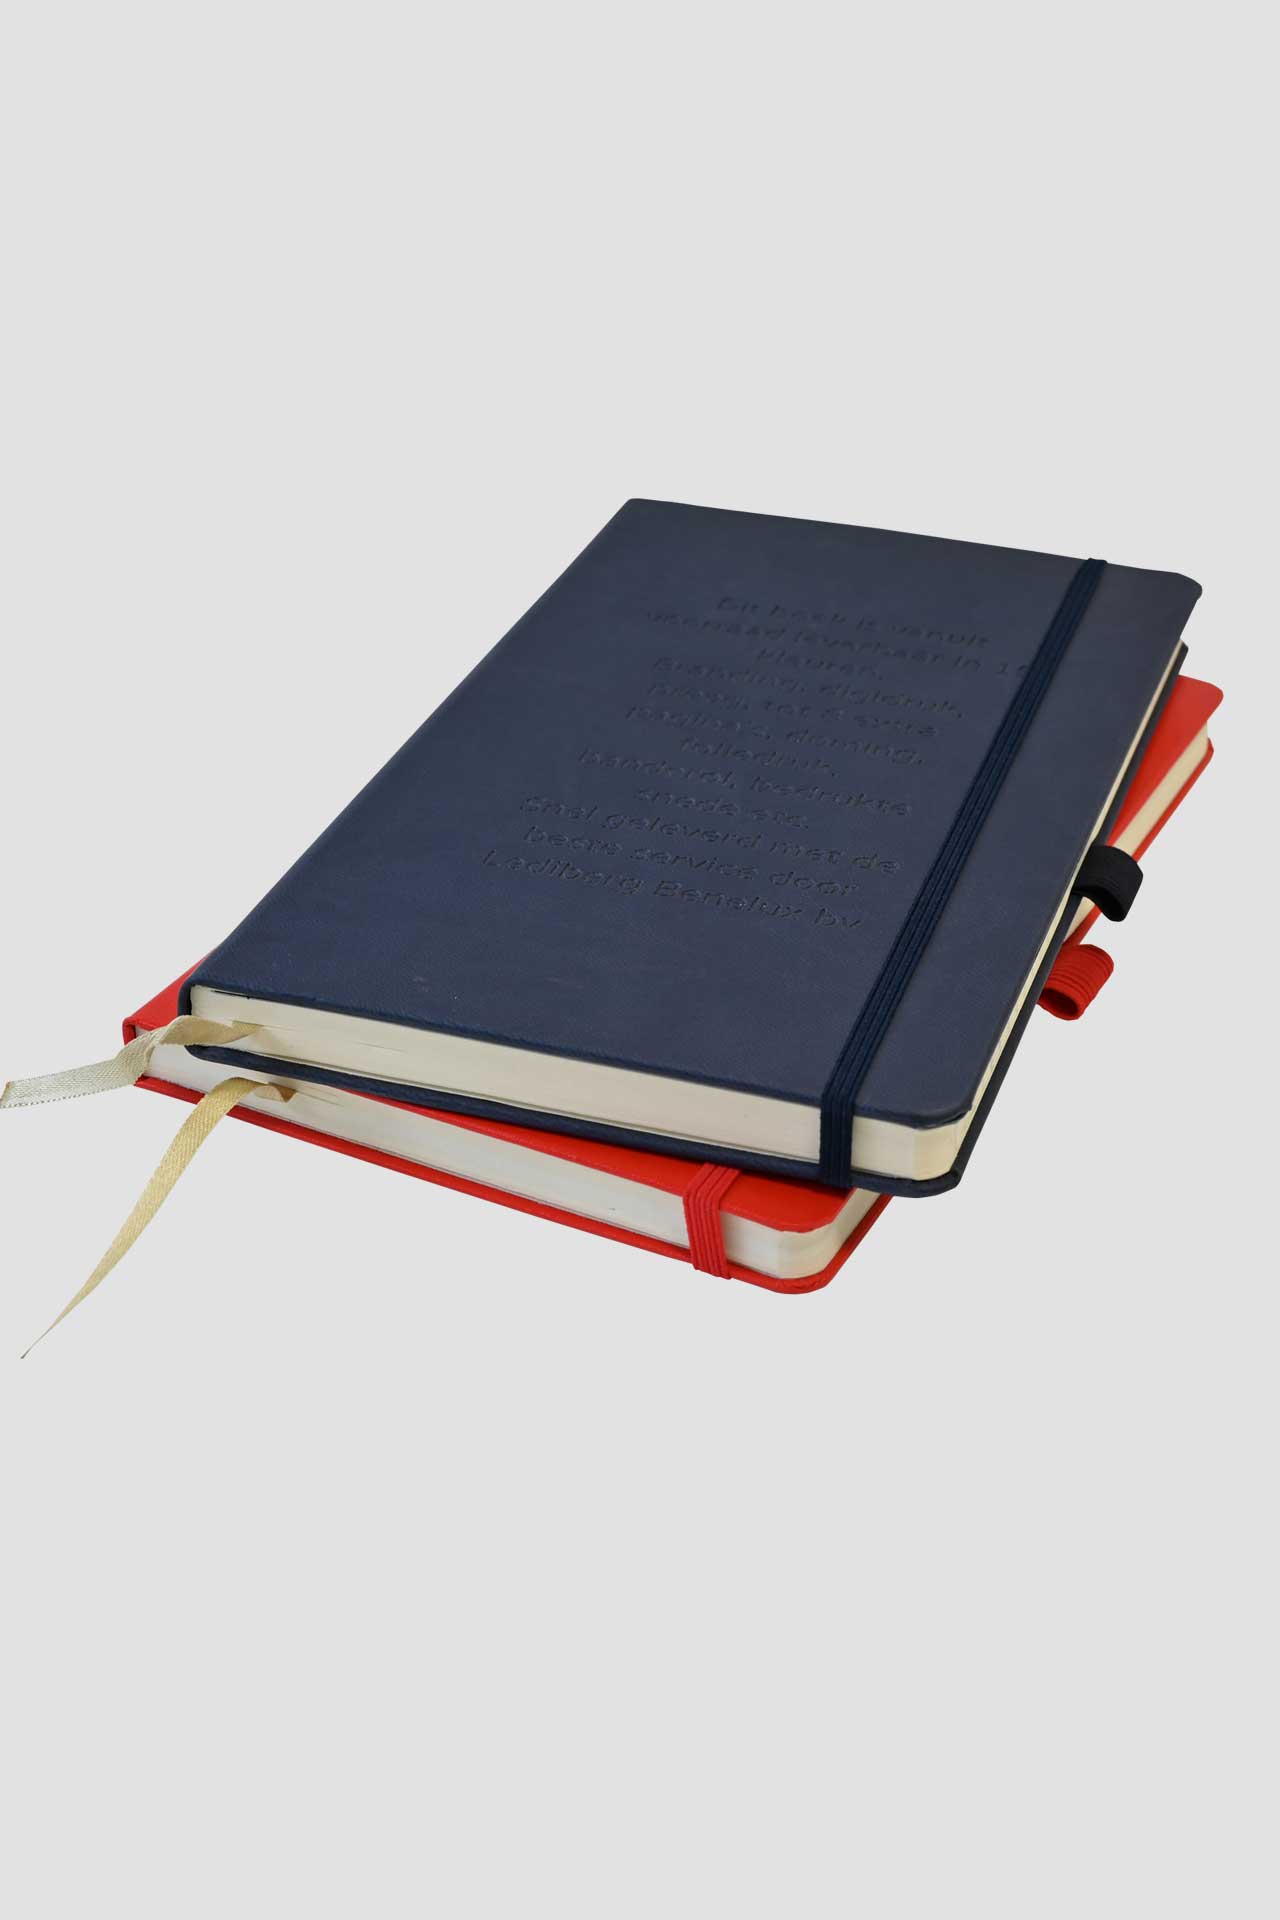 2 Castelli notitieboeken op elkaar gestapeld